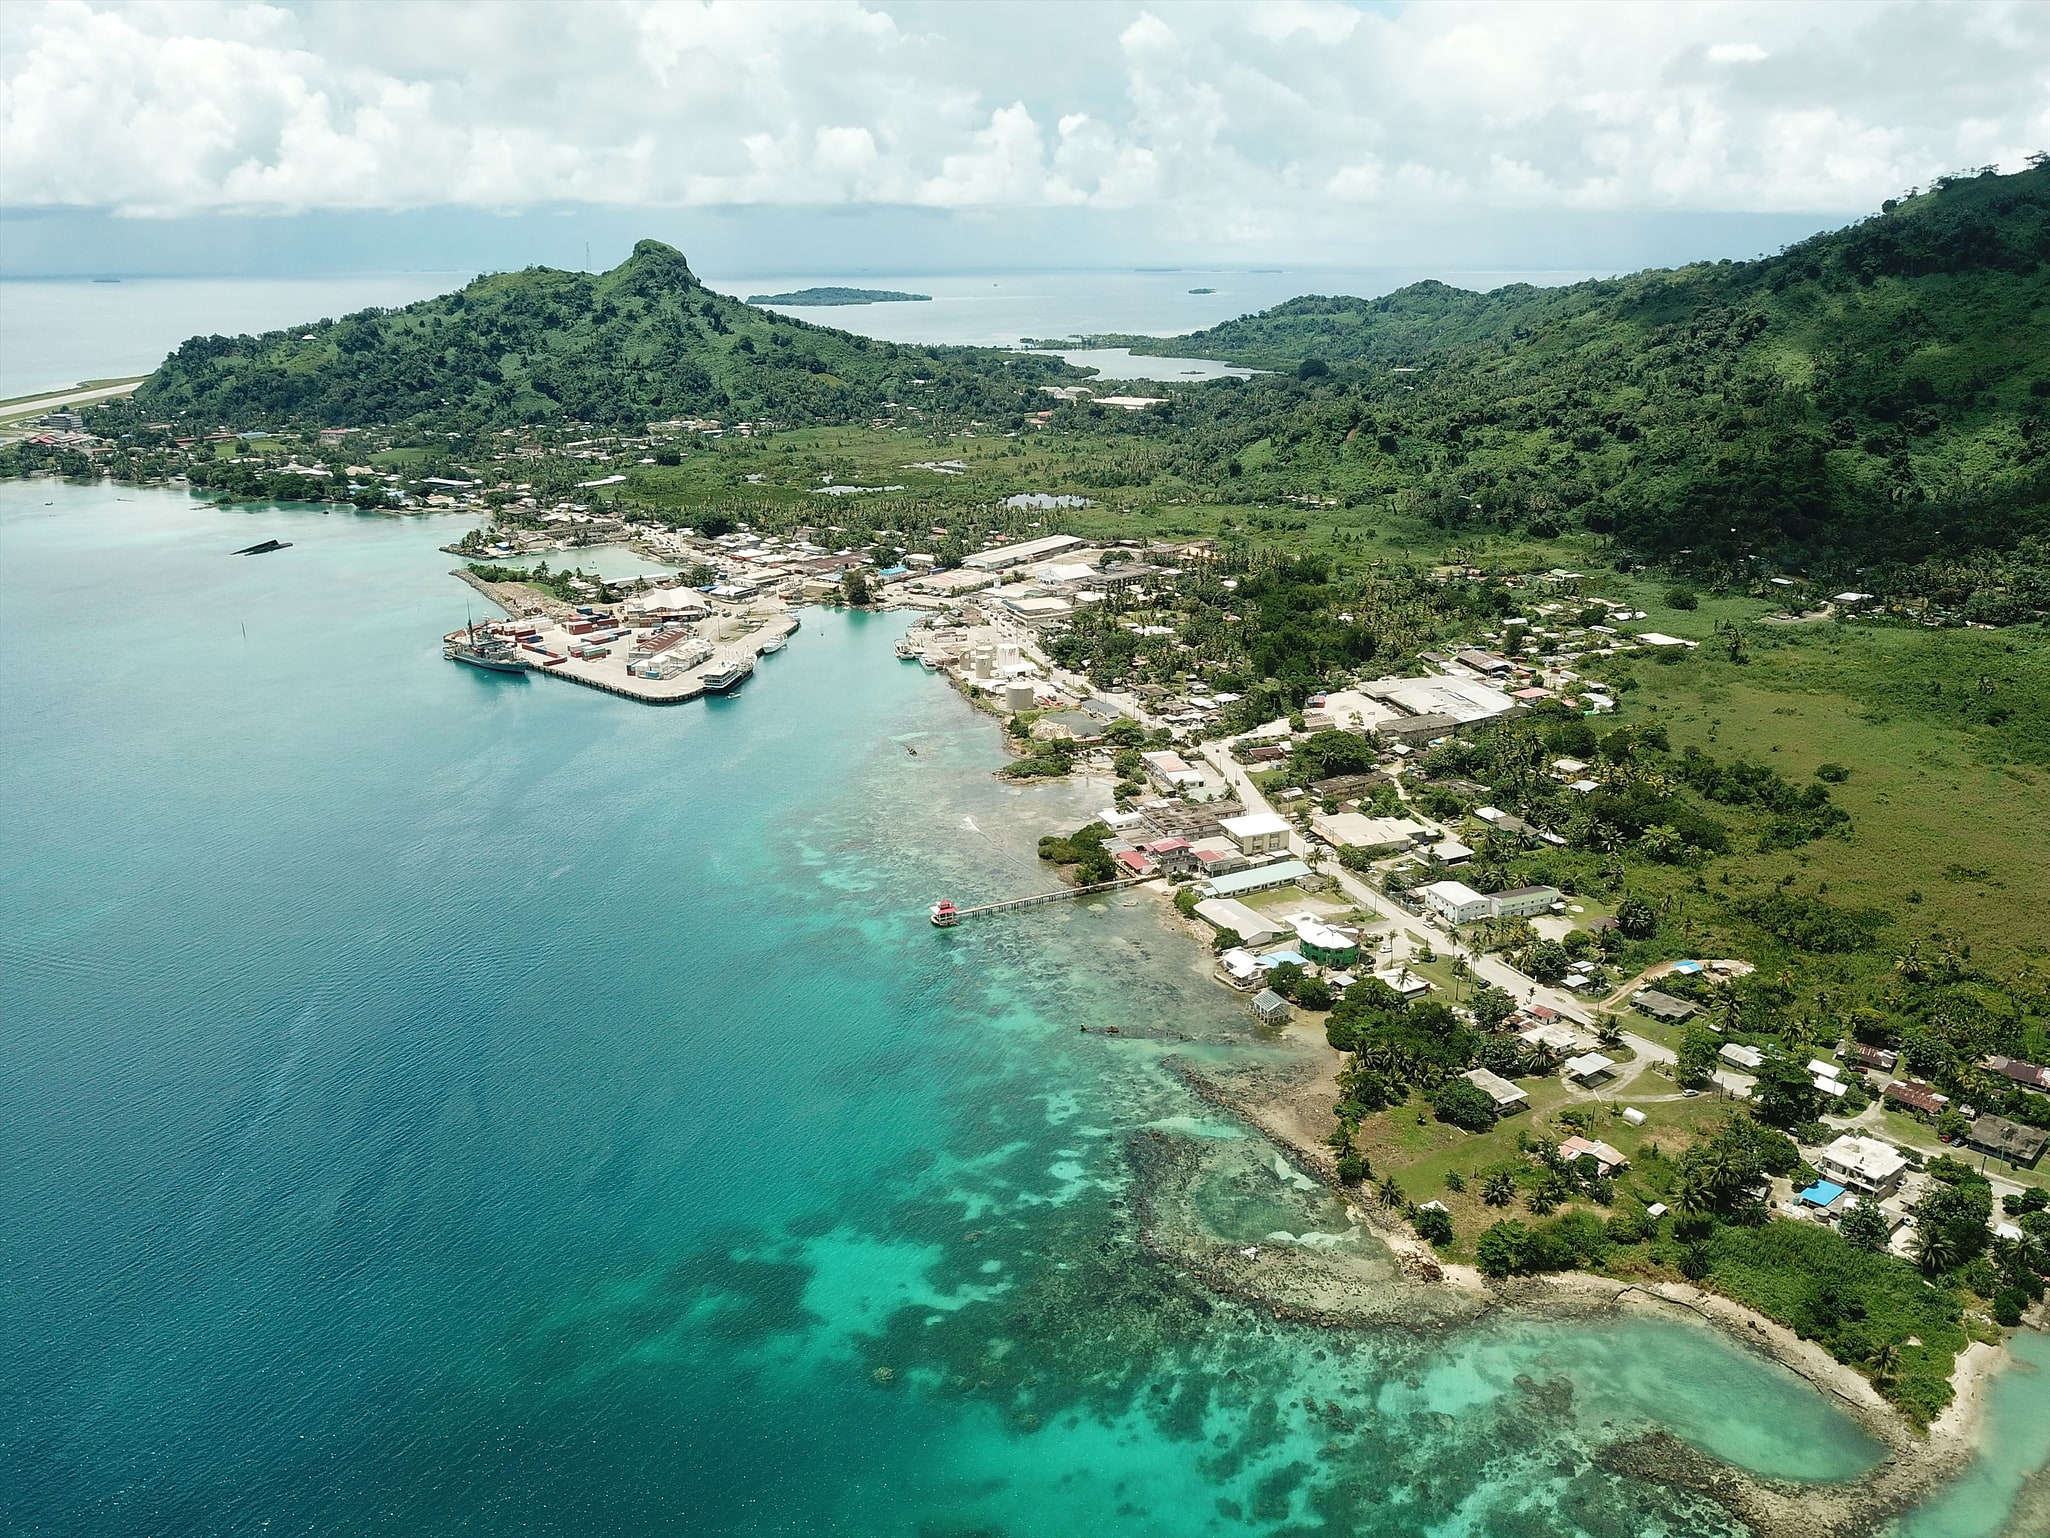 Weno, Föderierte Staaten von Mikronesien